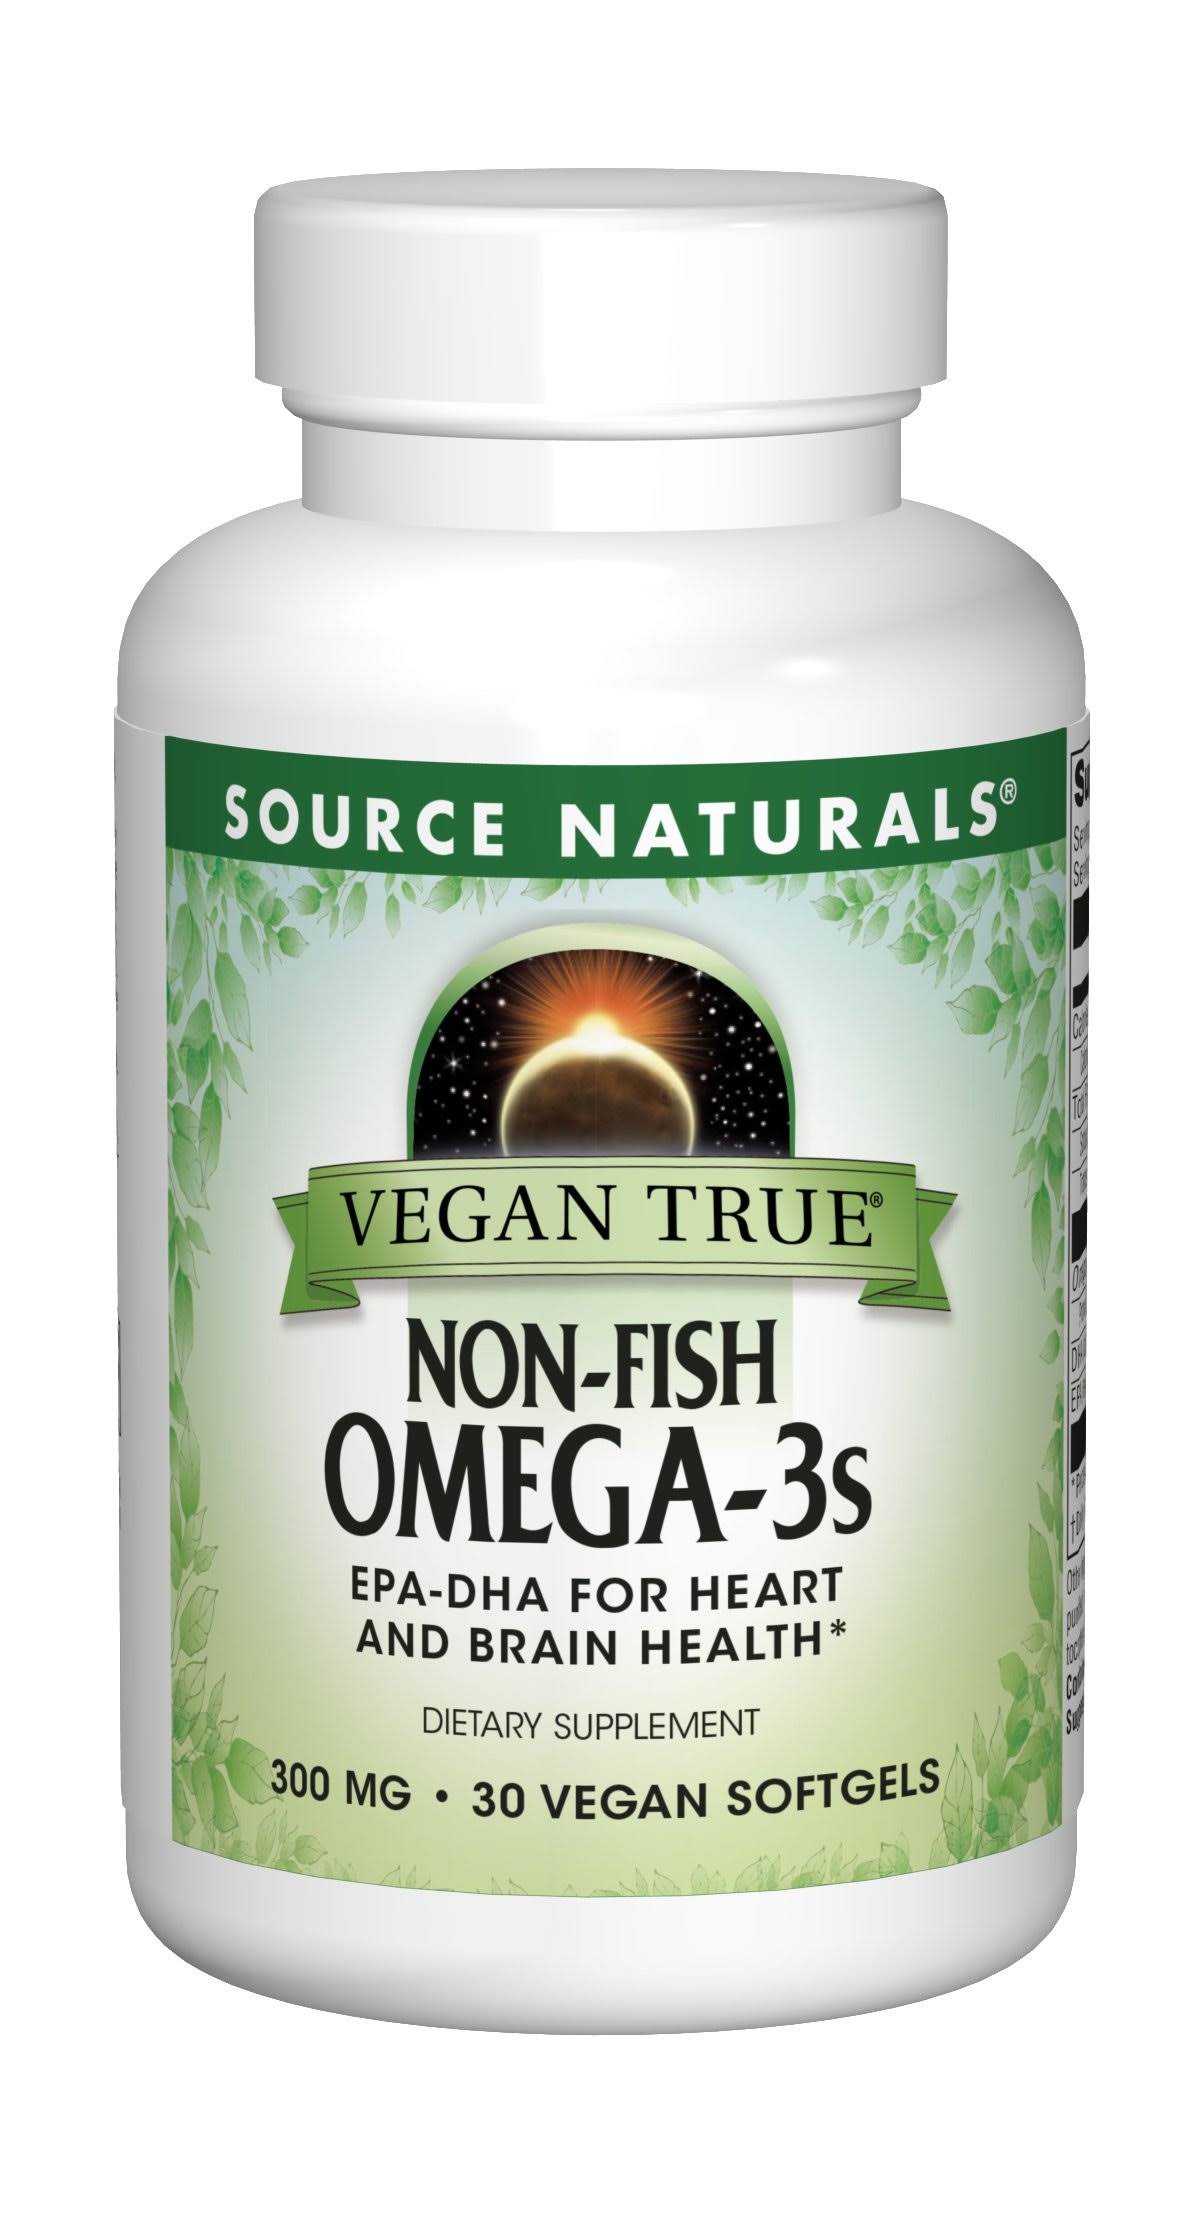 Source Naturals - Vegan True Non-Fish Omega-3s - 30 Vegan Softgels